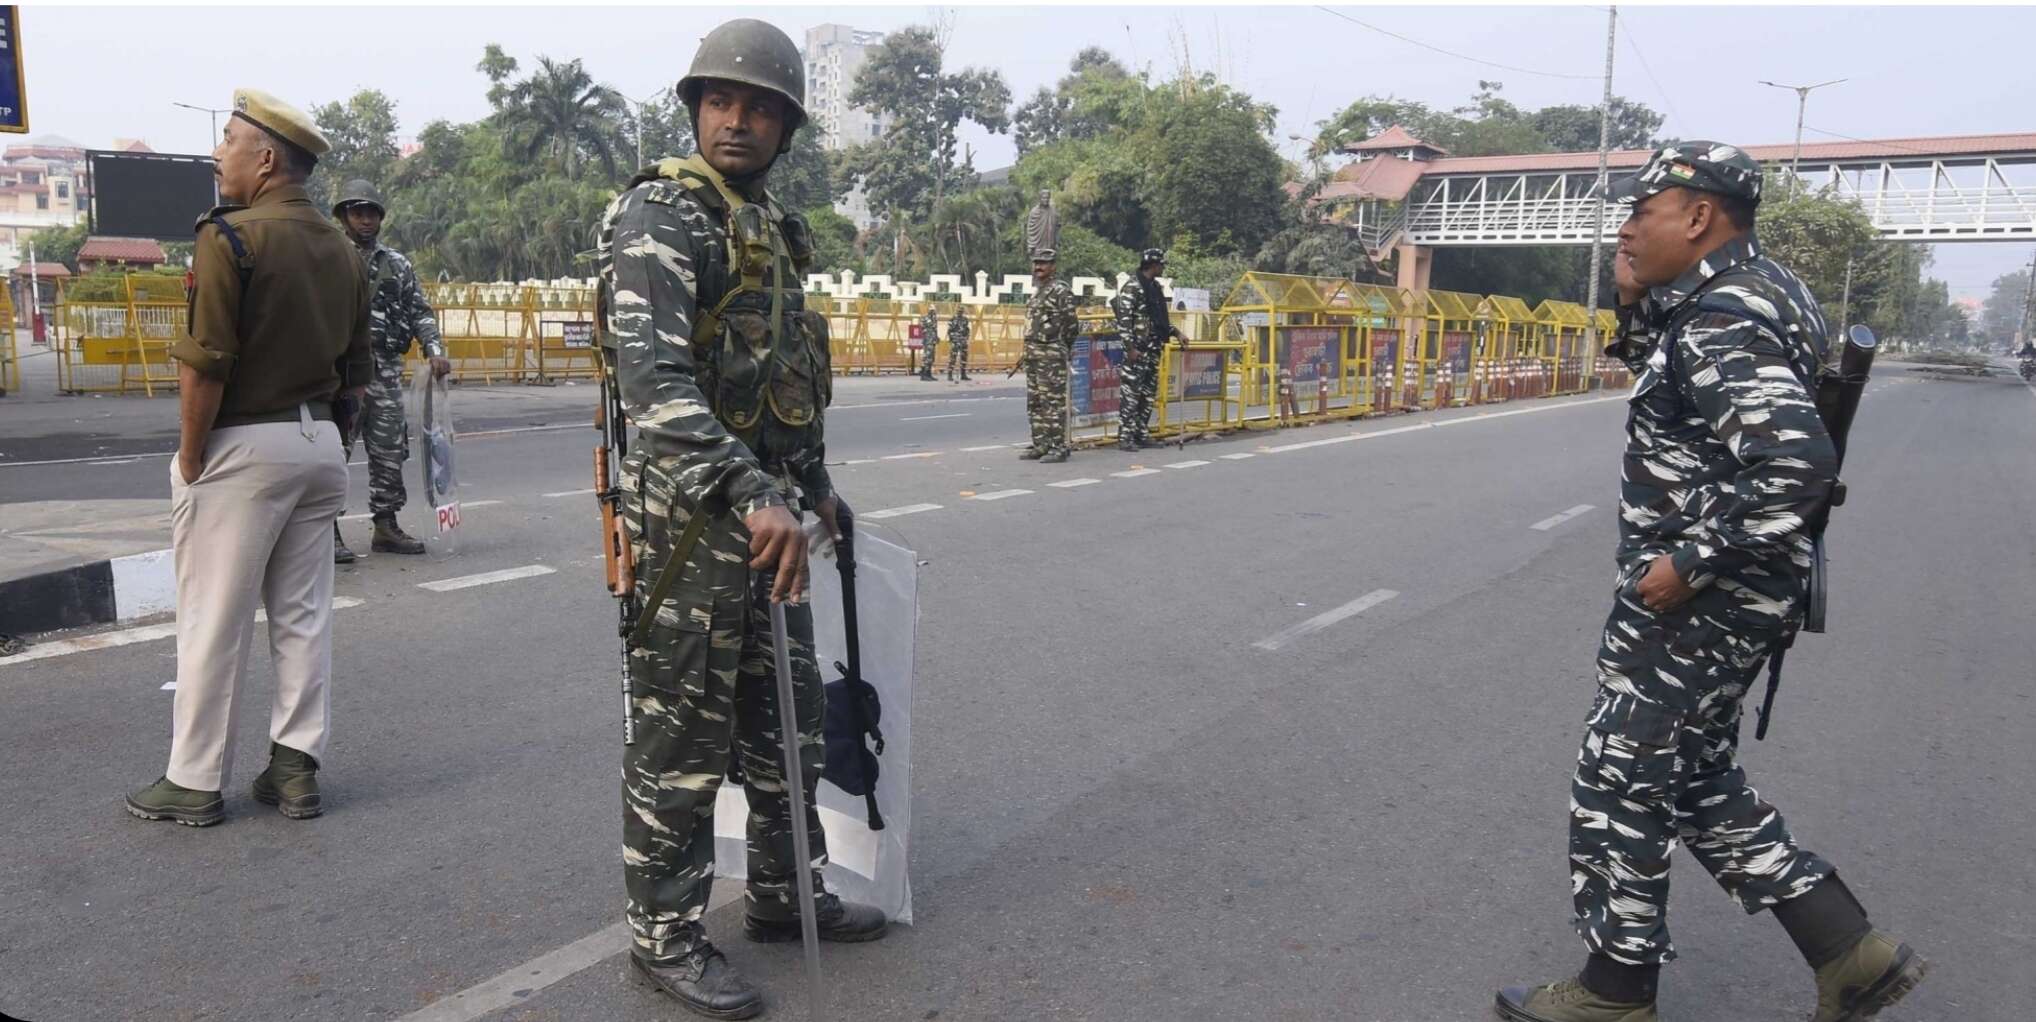 असम : दो धार्मिक गुटों के बीच पत्थरबाजी के बाद सिलचर शहर में लगाया गया कर्फ्यू